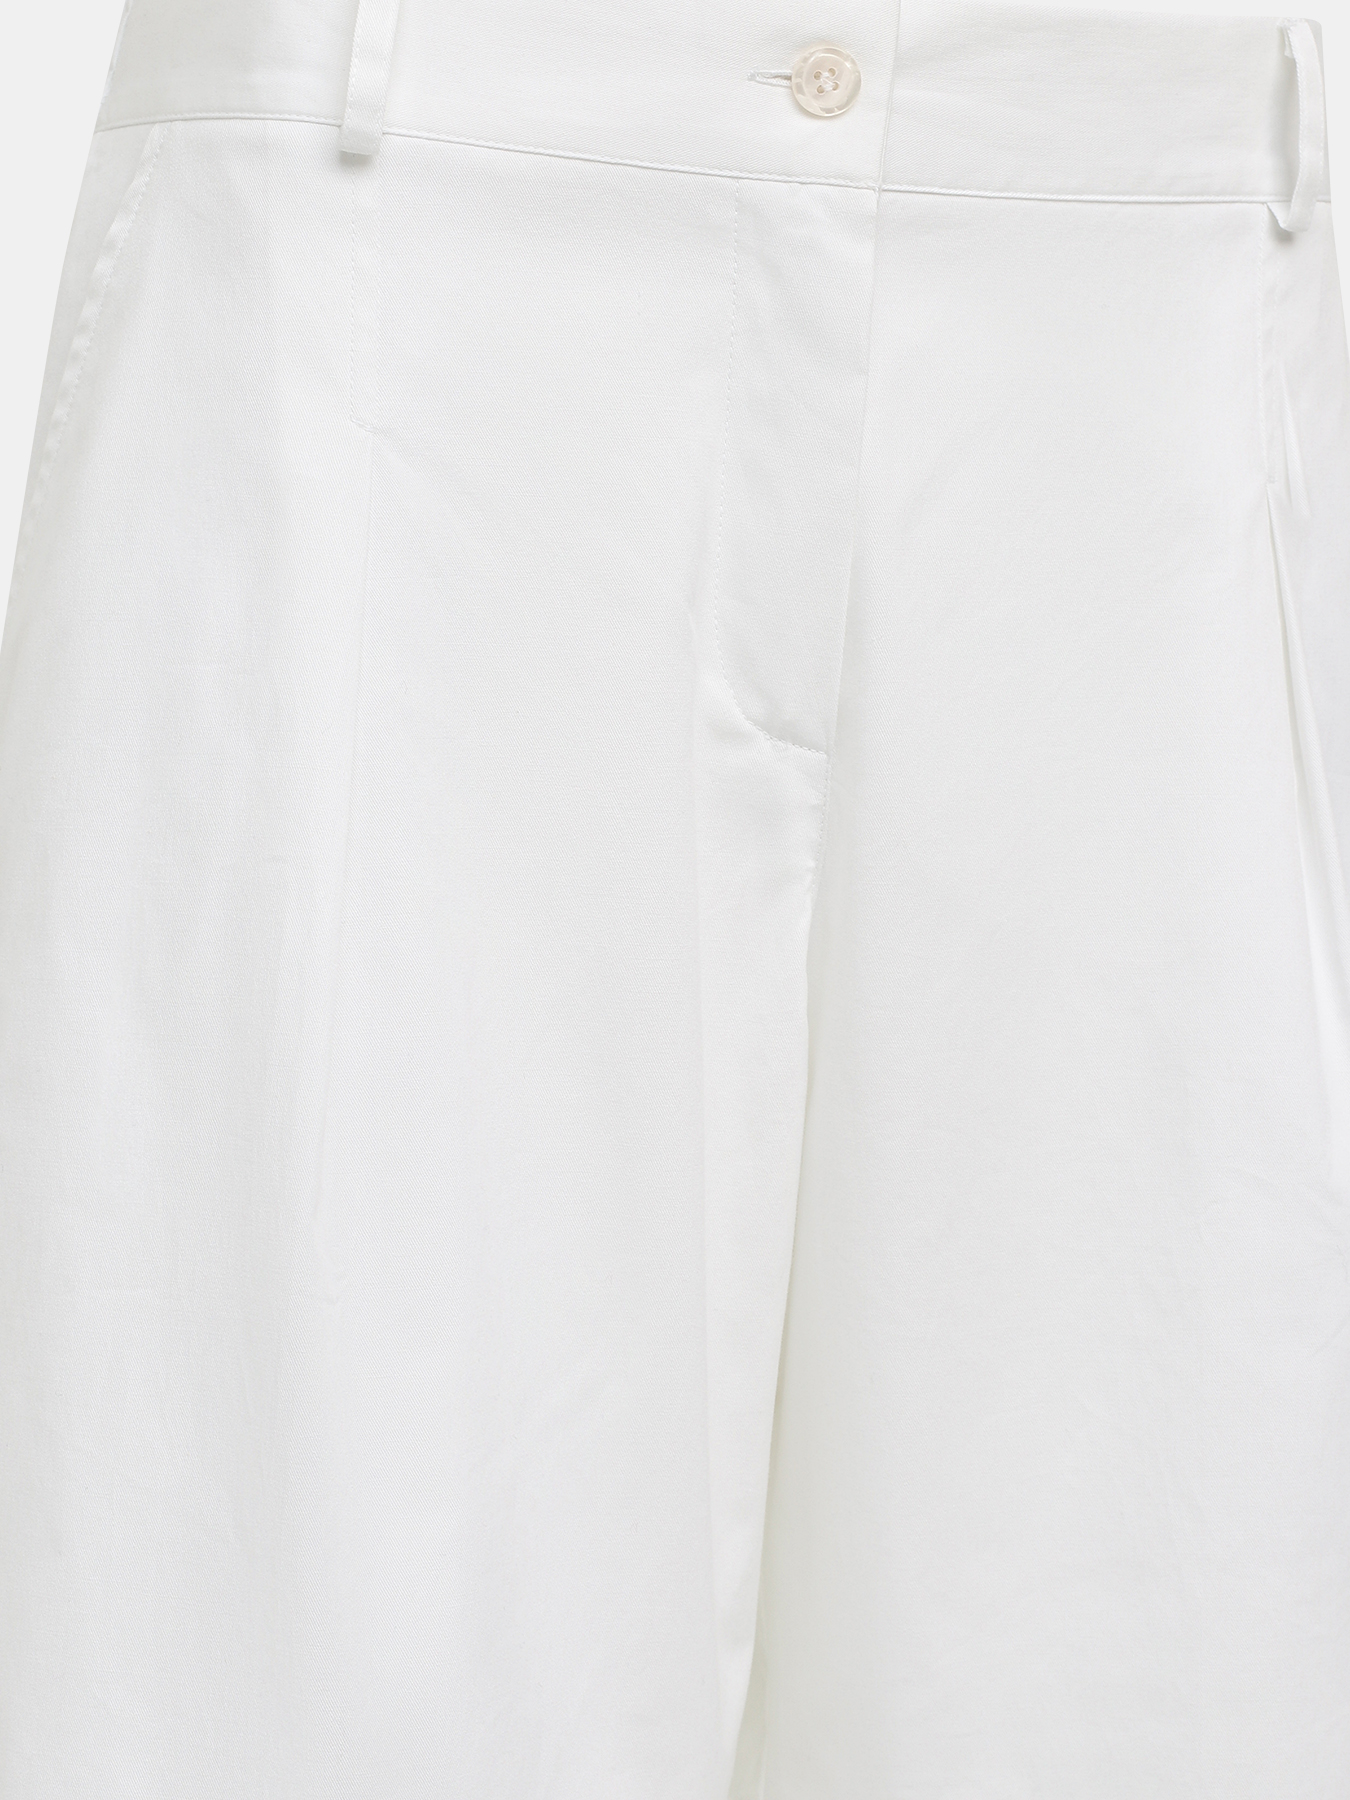 Шорты Zanetti 403909-024, цвет белый, размер 48 - фото 3